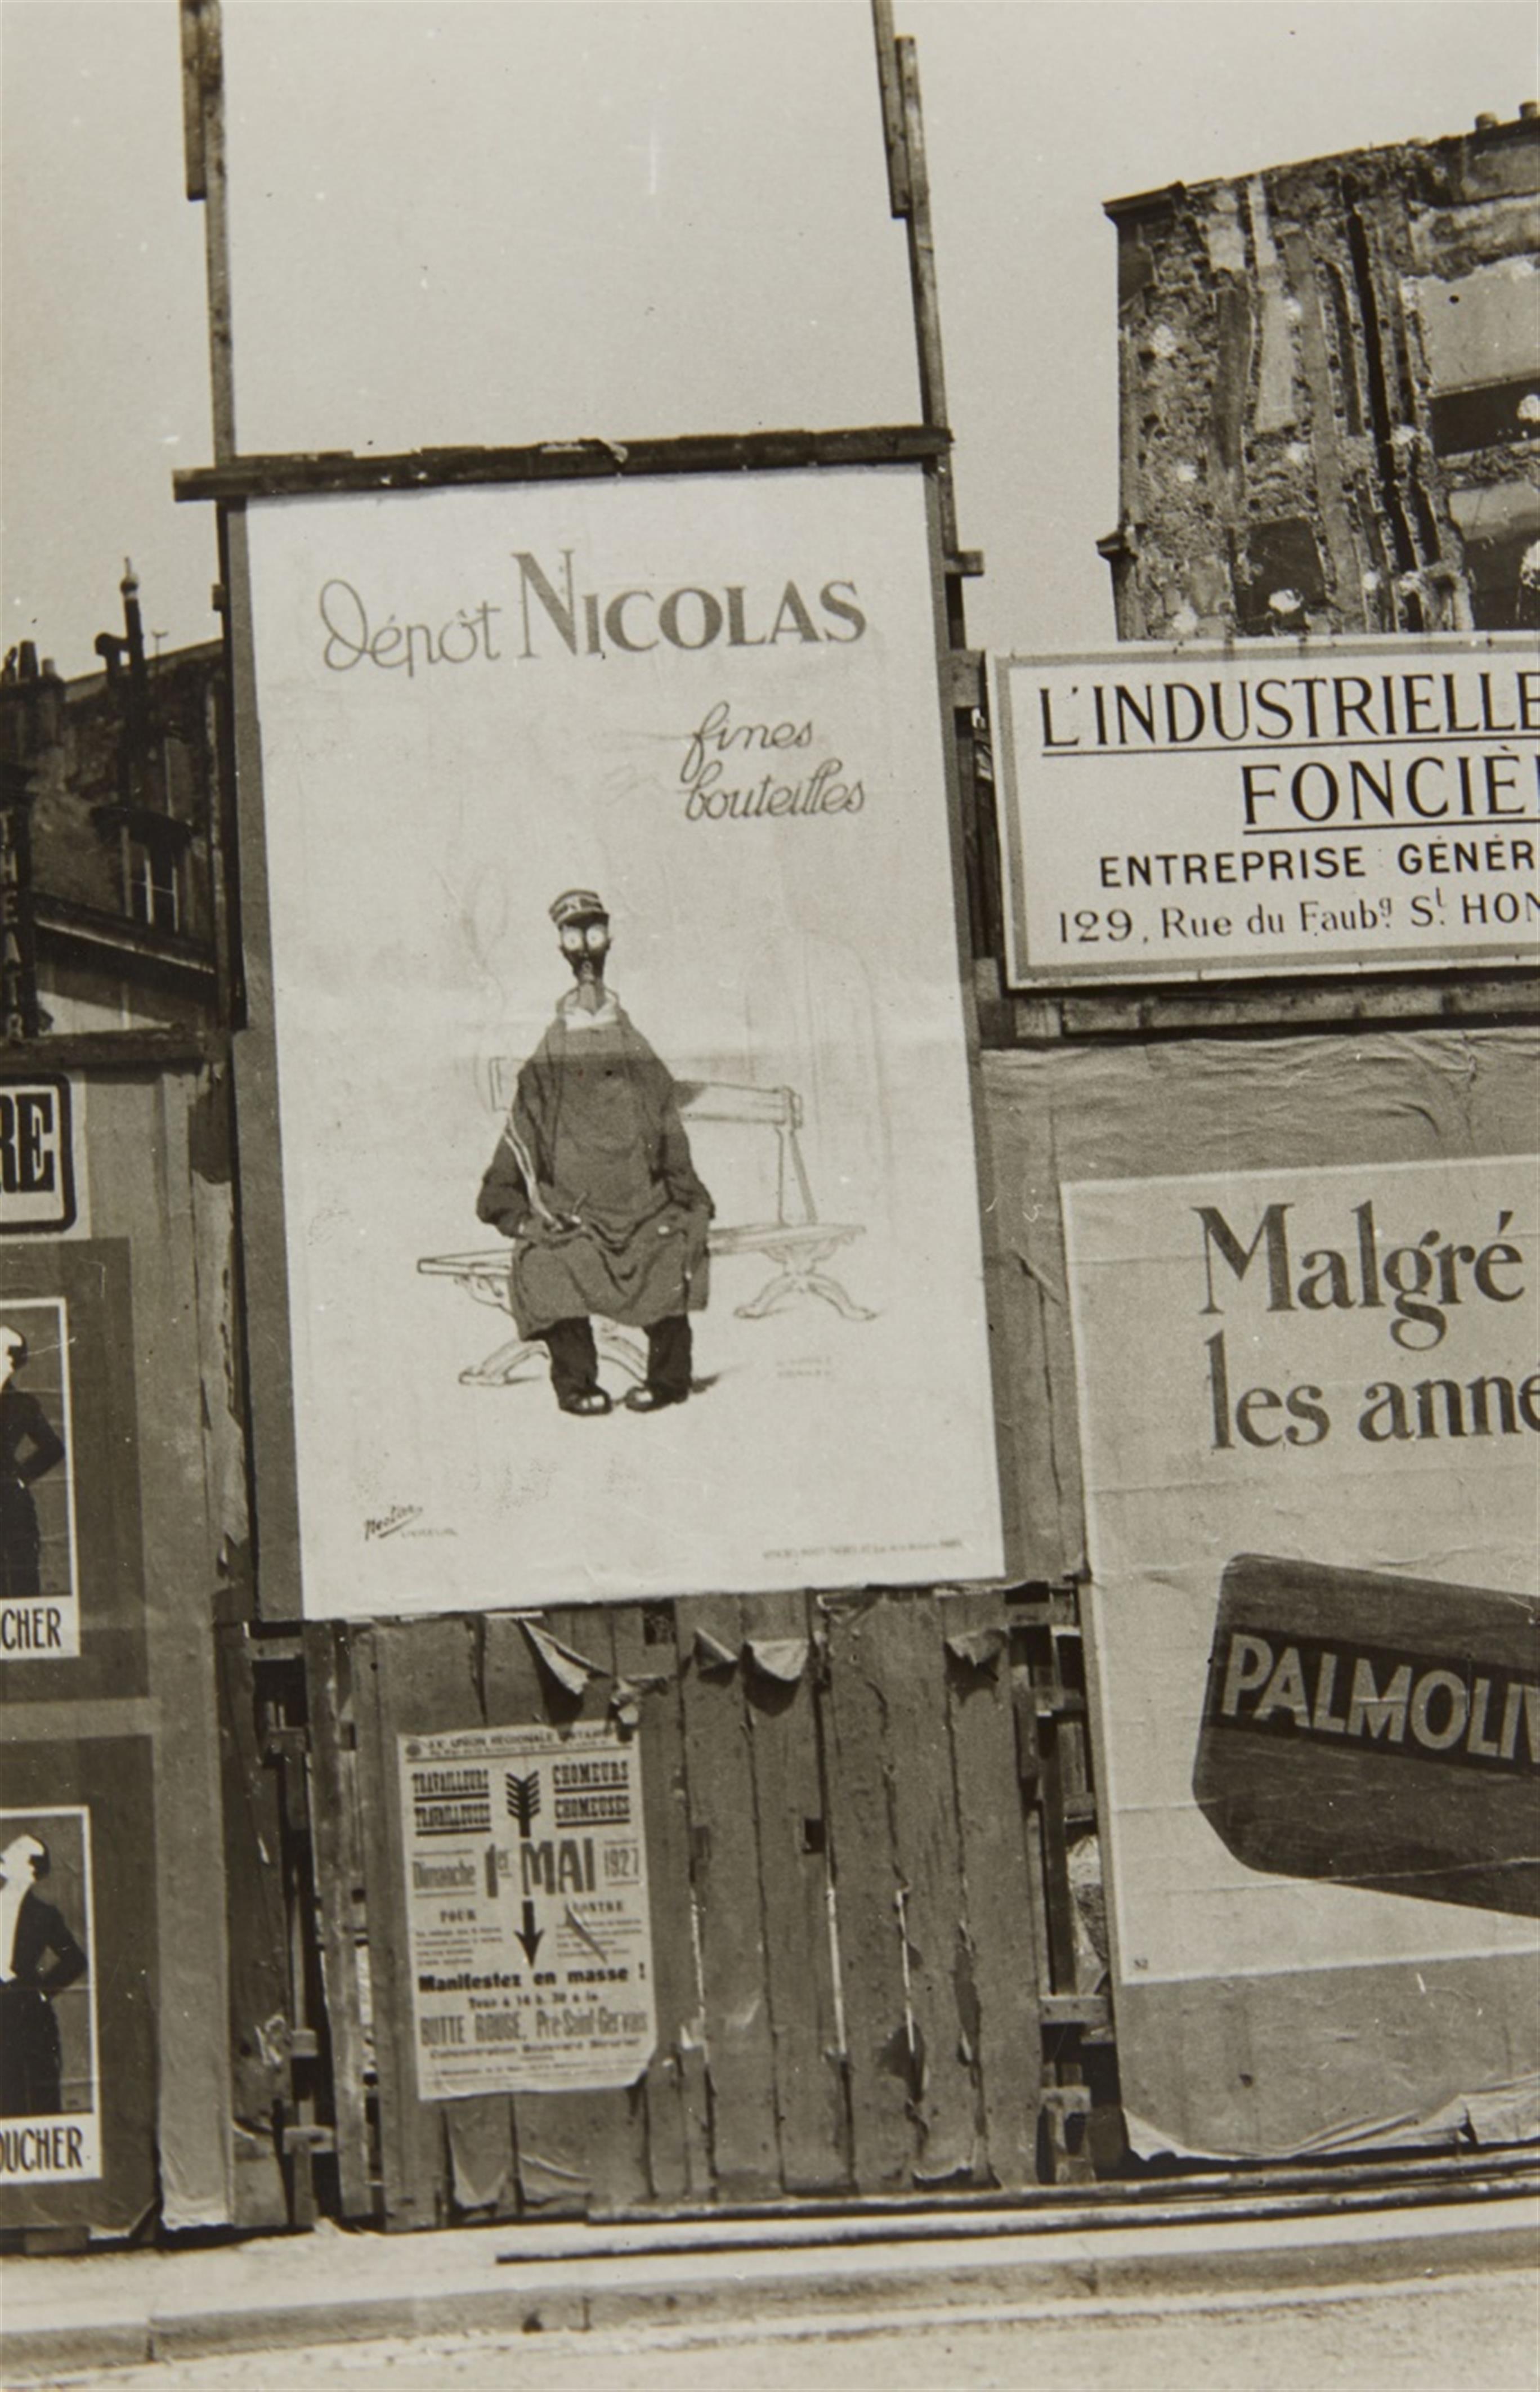 Germaine Krull - Panneau publicitaire, l'affiche de "Nicolas Fines bouteilles" - image-1